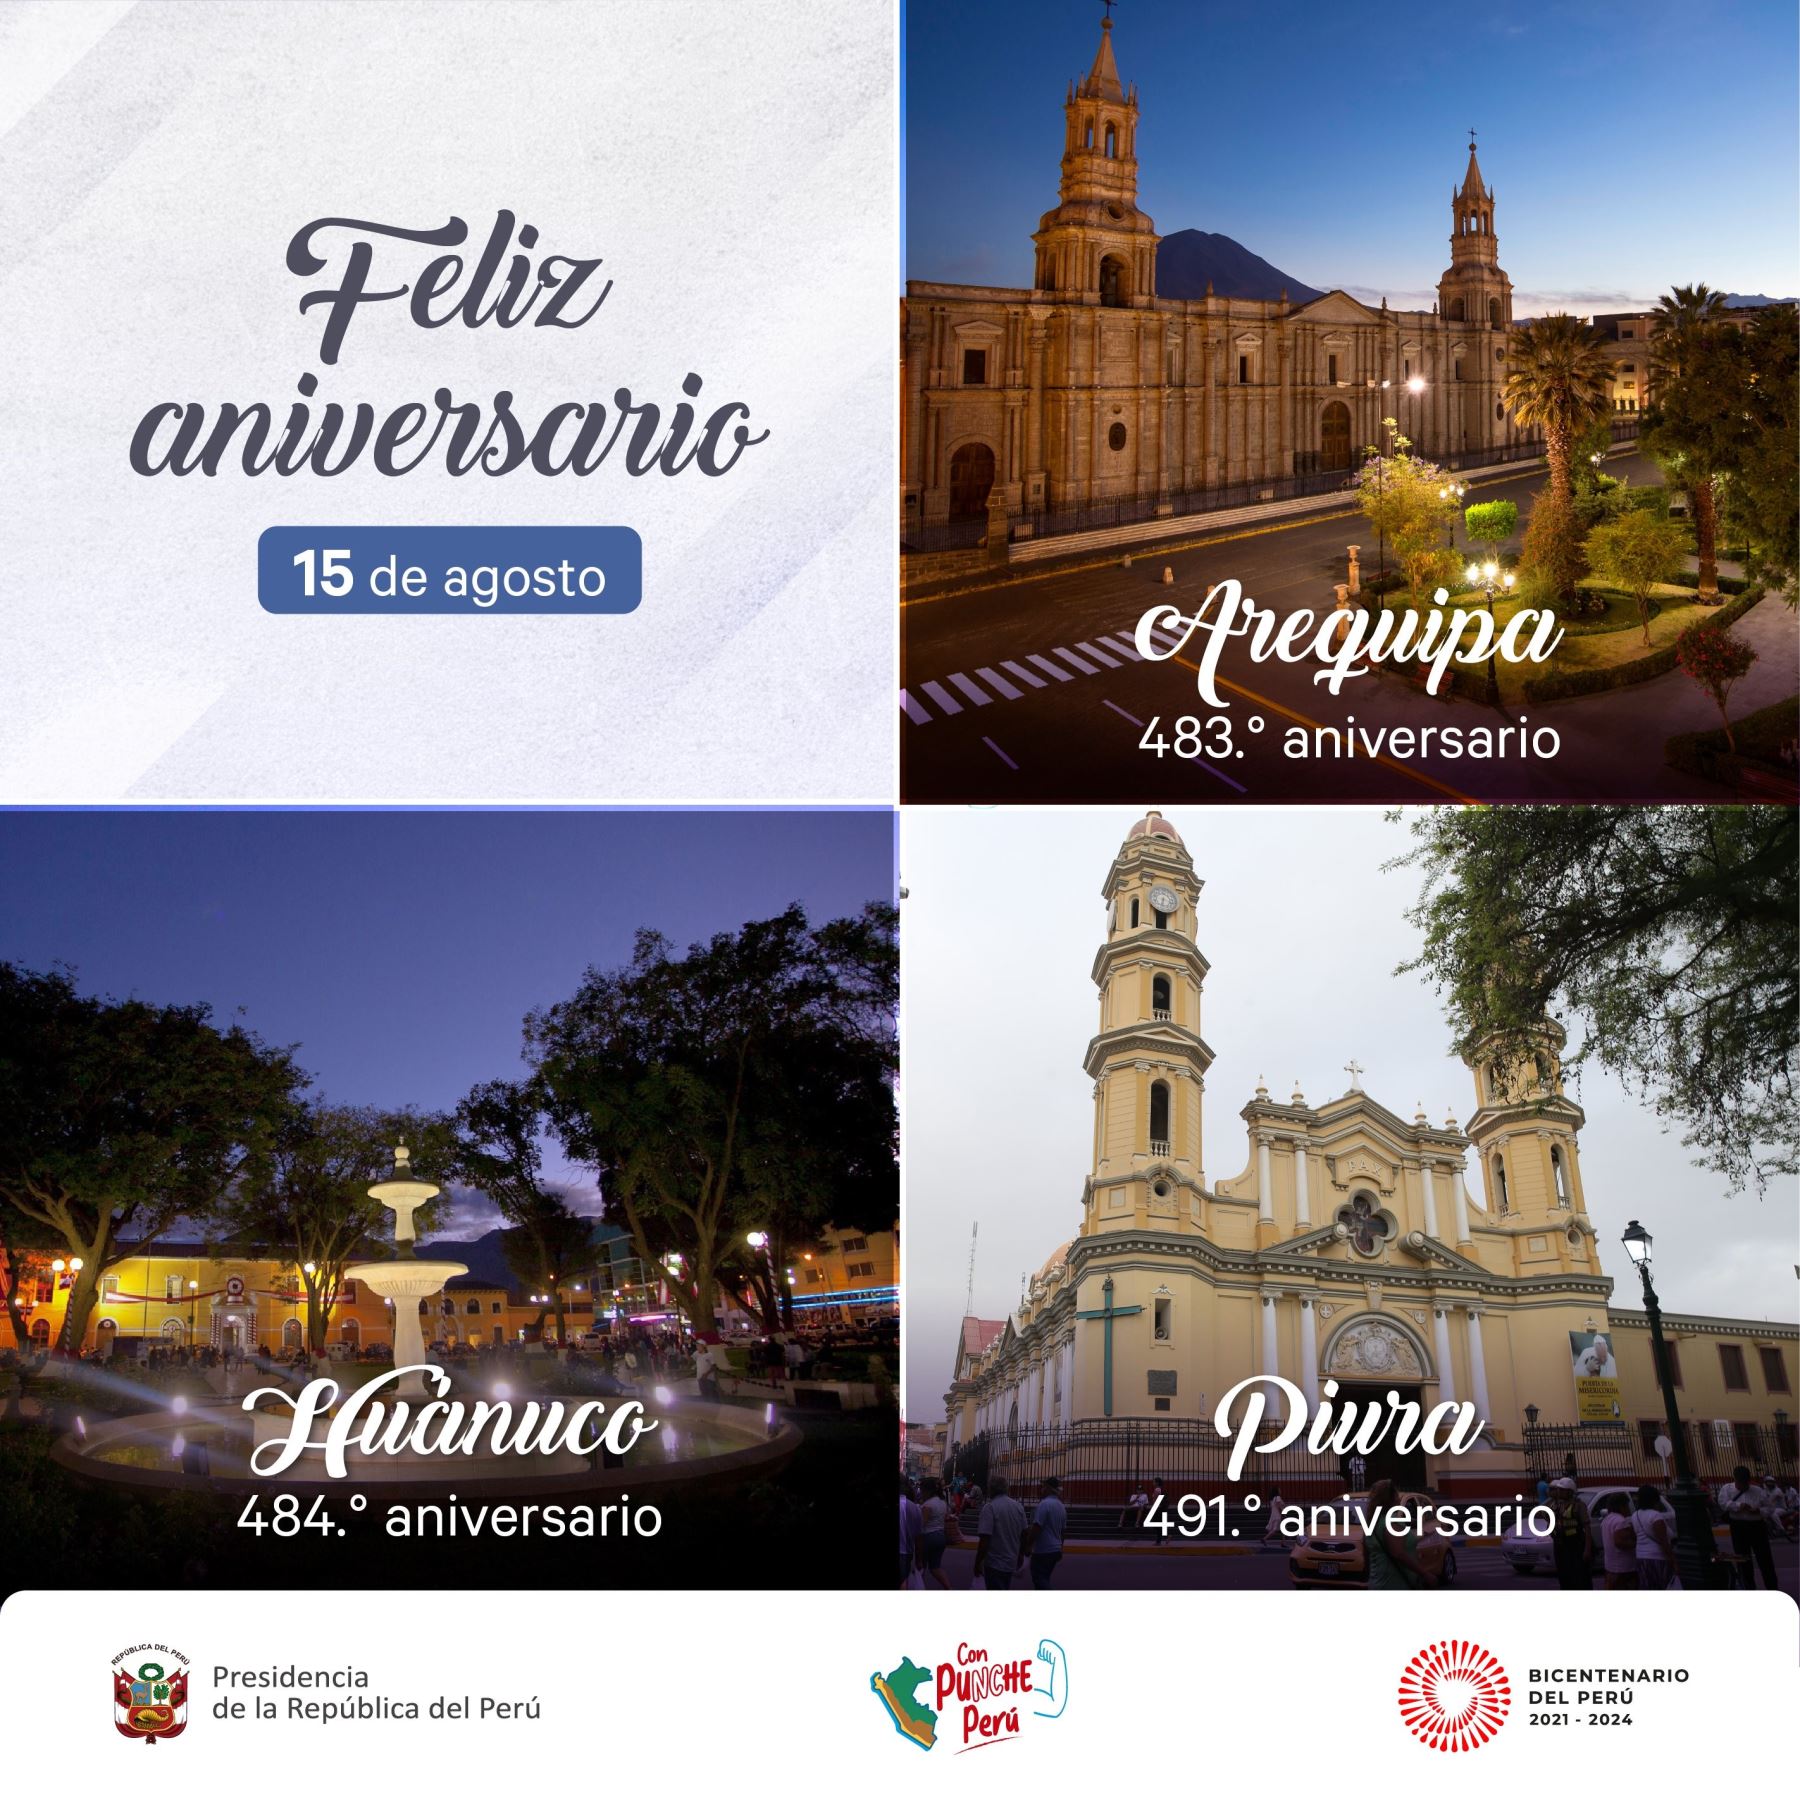 Ejecutivo saluda a Arequipa, Huánuco y Piura por su aniversario